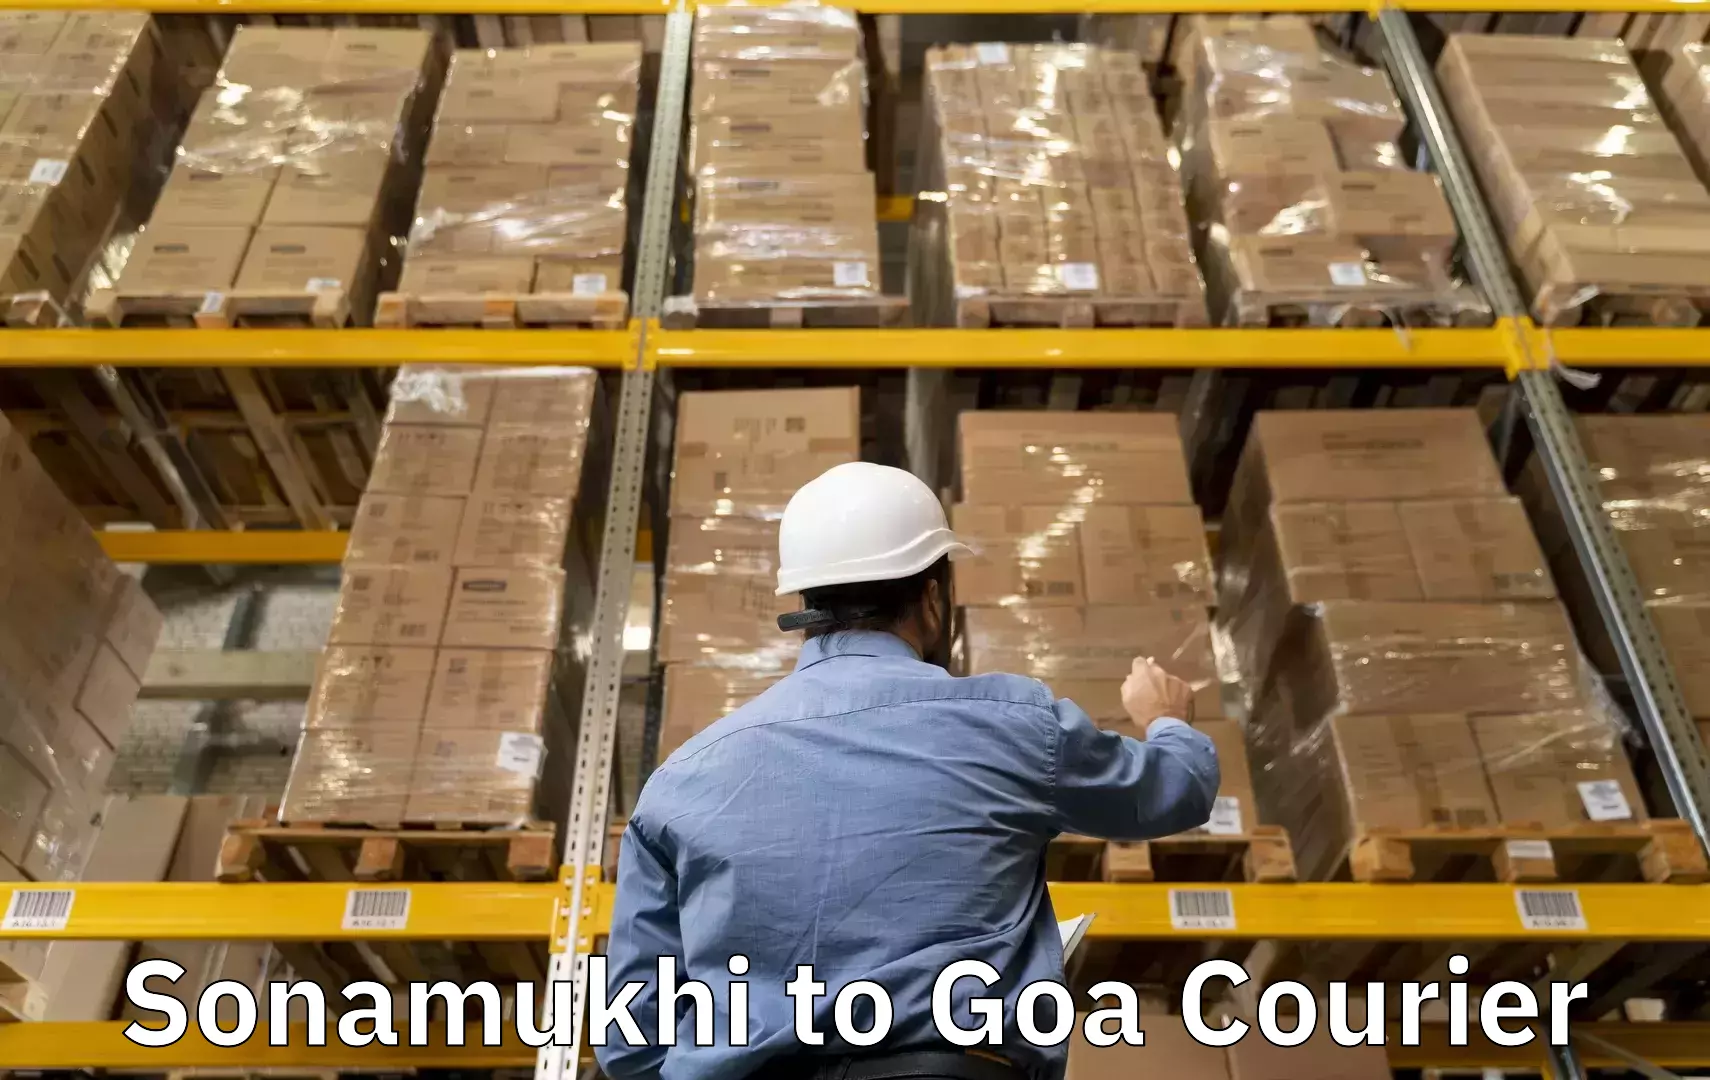 Luggage shipment specialists Sonamukhi to Goa